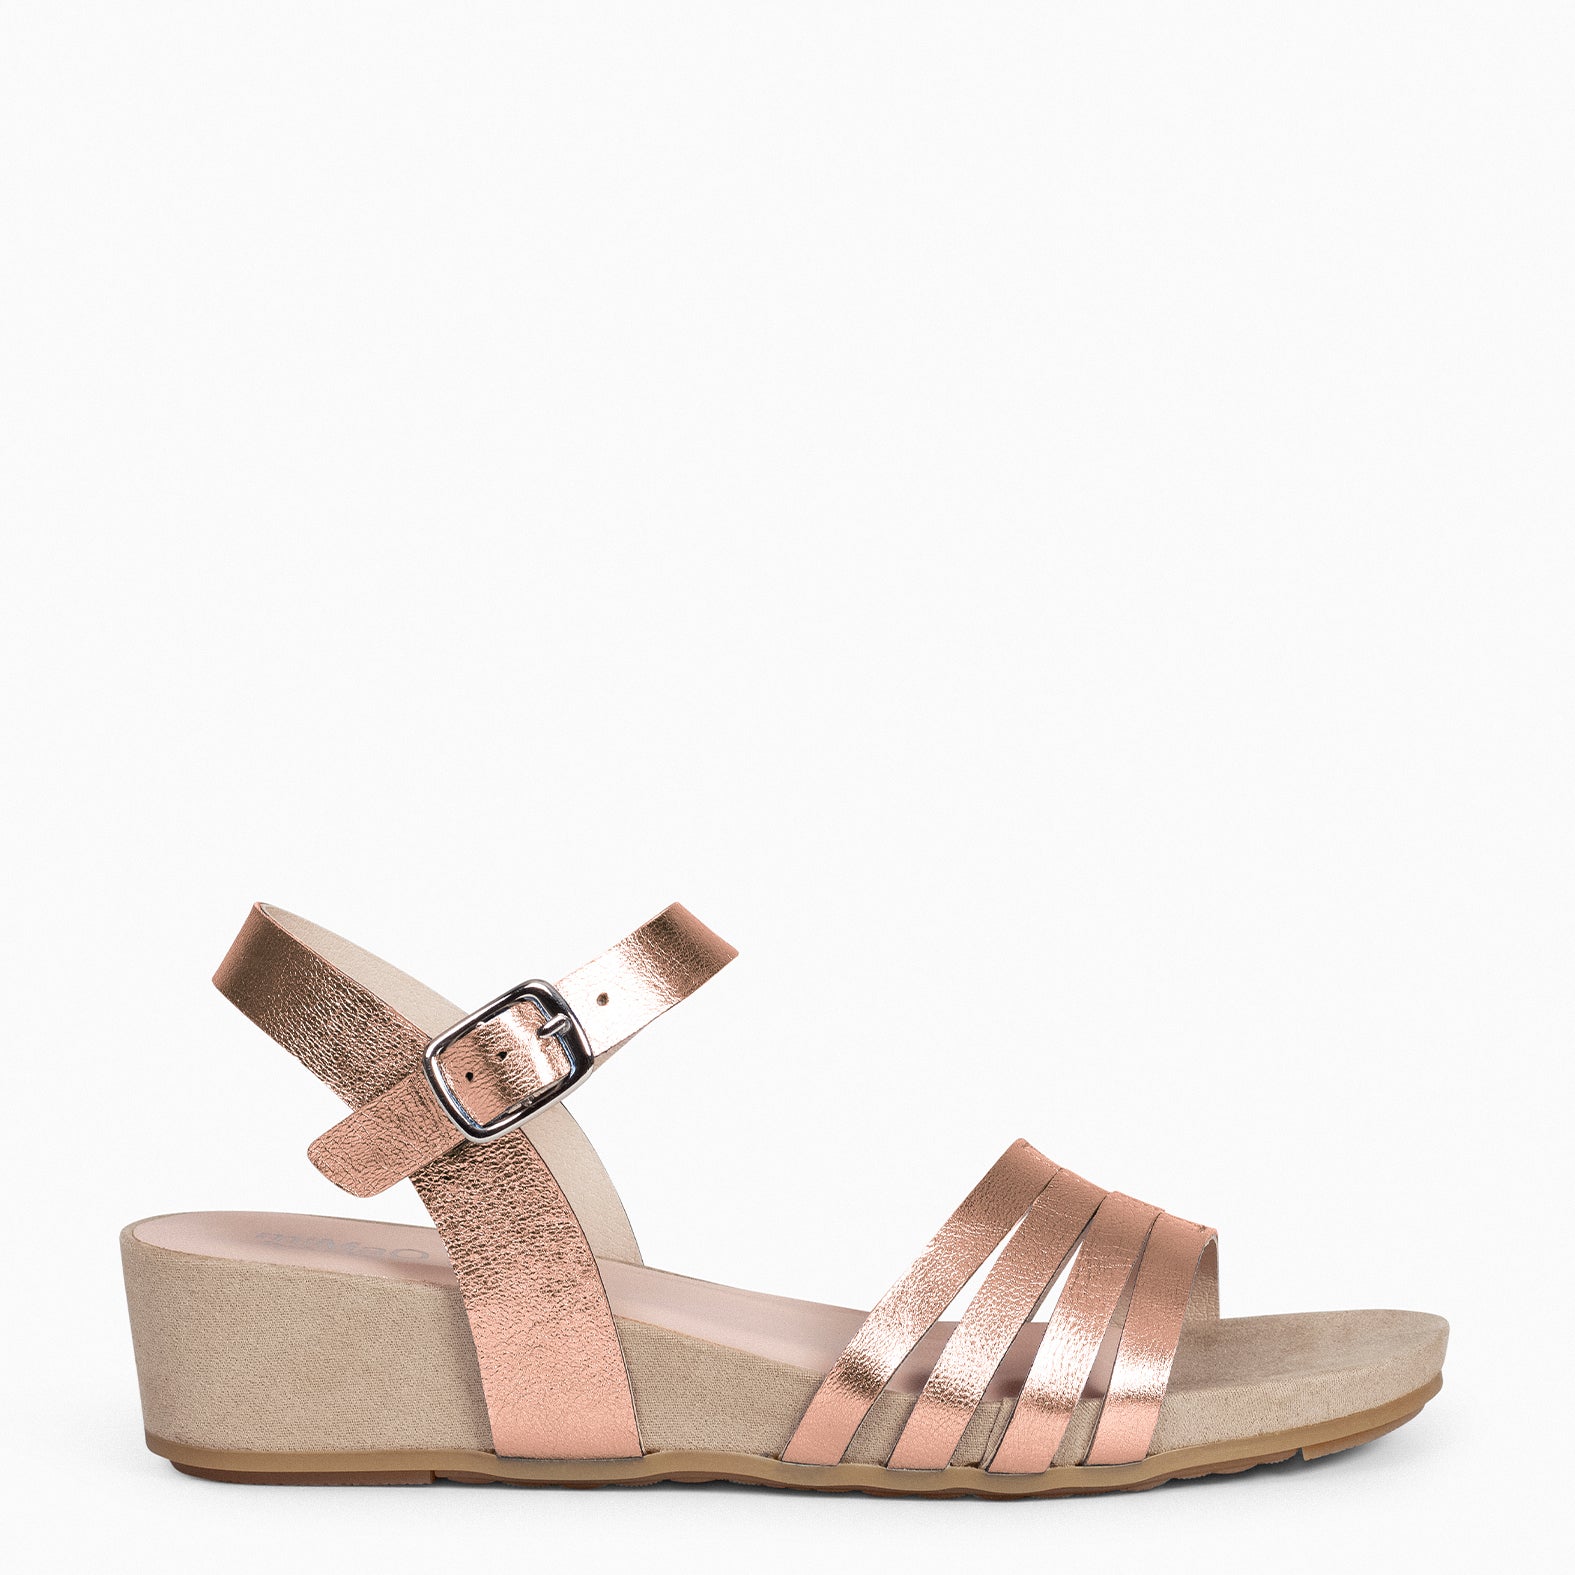 MESINA – ROSE Wedge sandal with metallic straps 